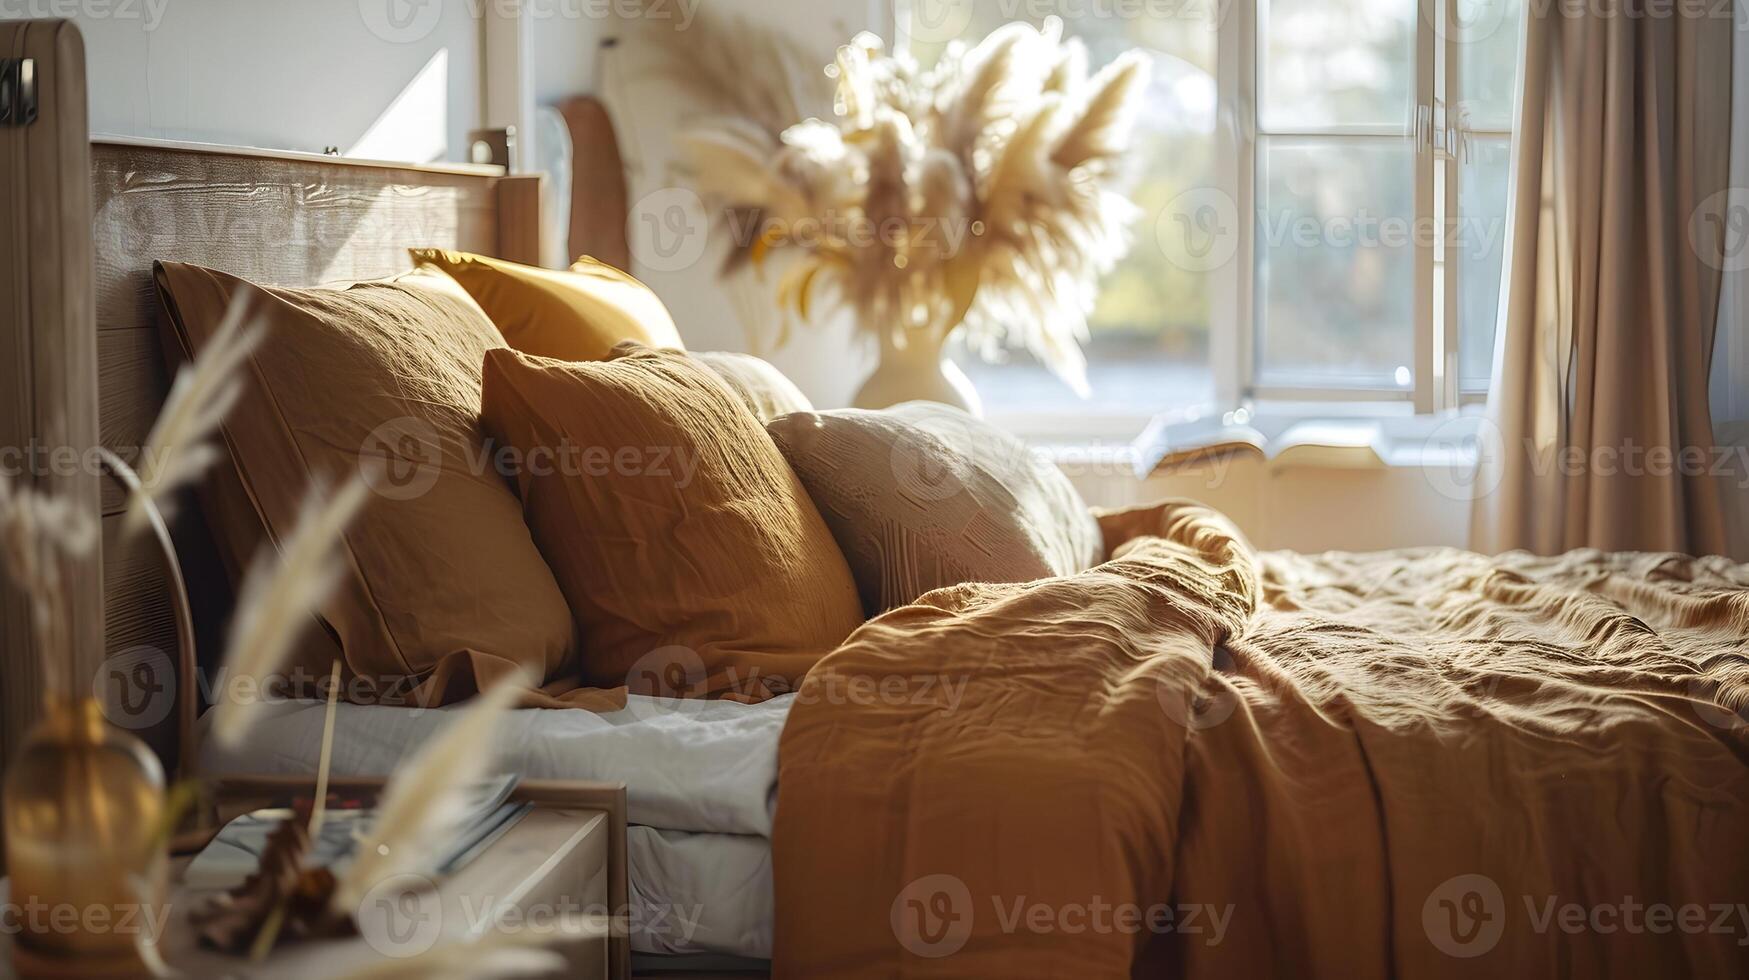 knus en sereen slaapkamer heiligdom uitstralend warmte en kalmte foto